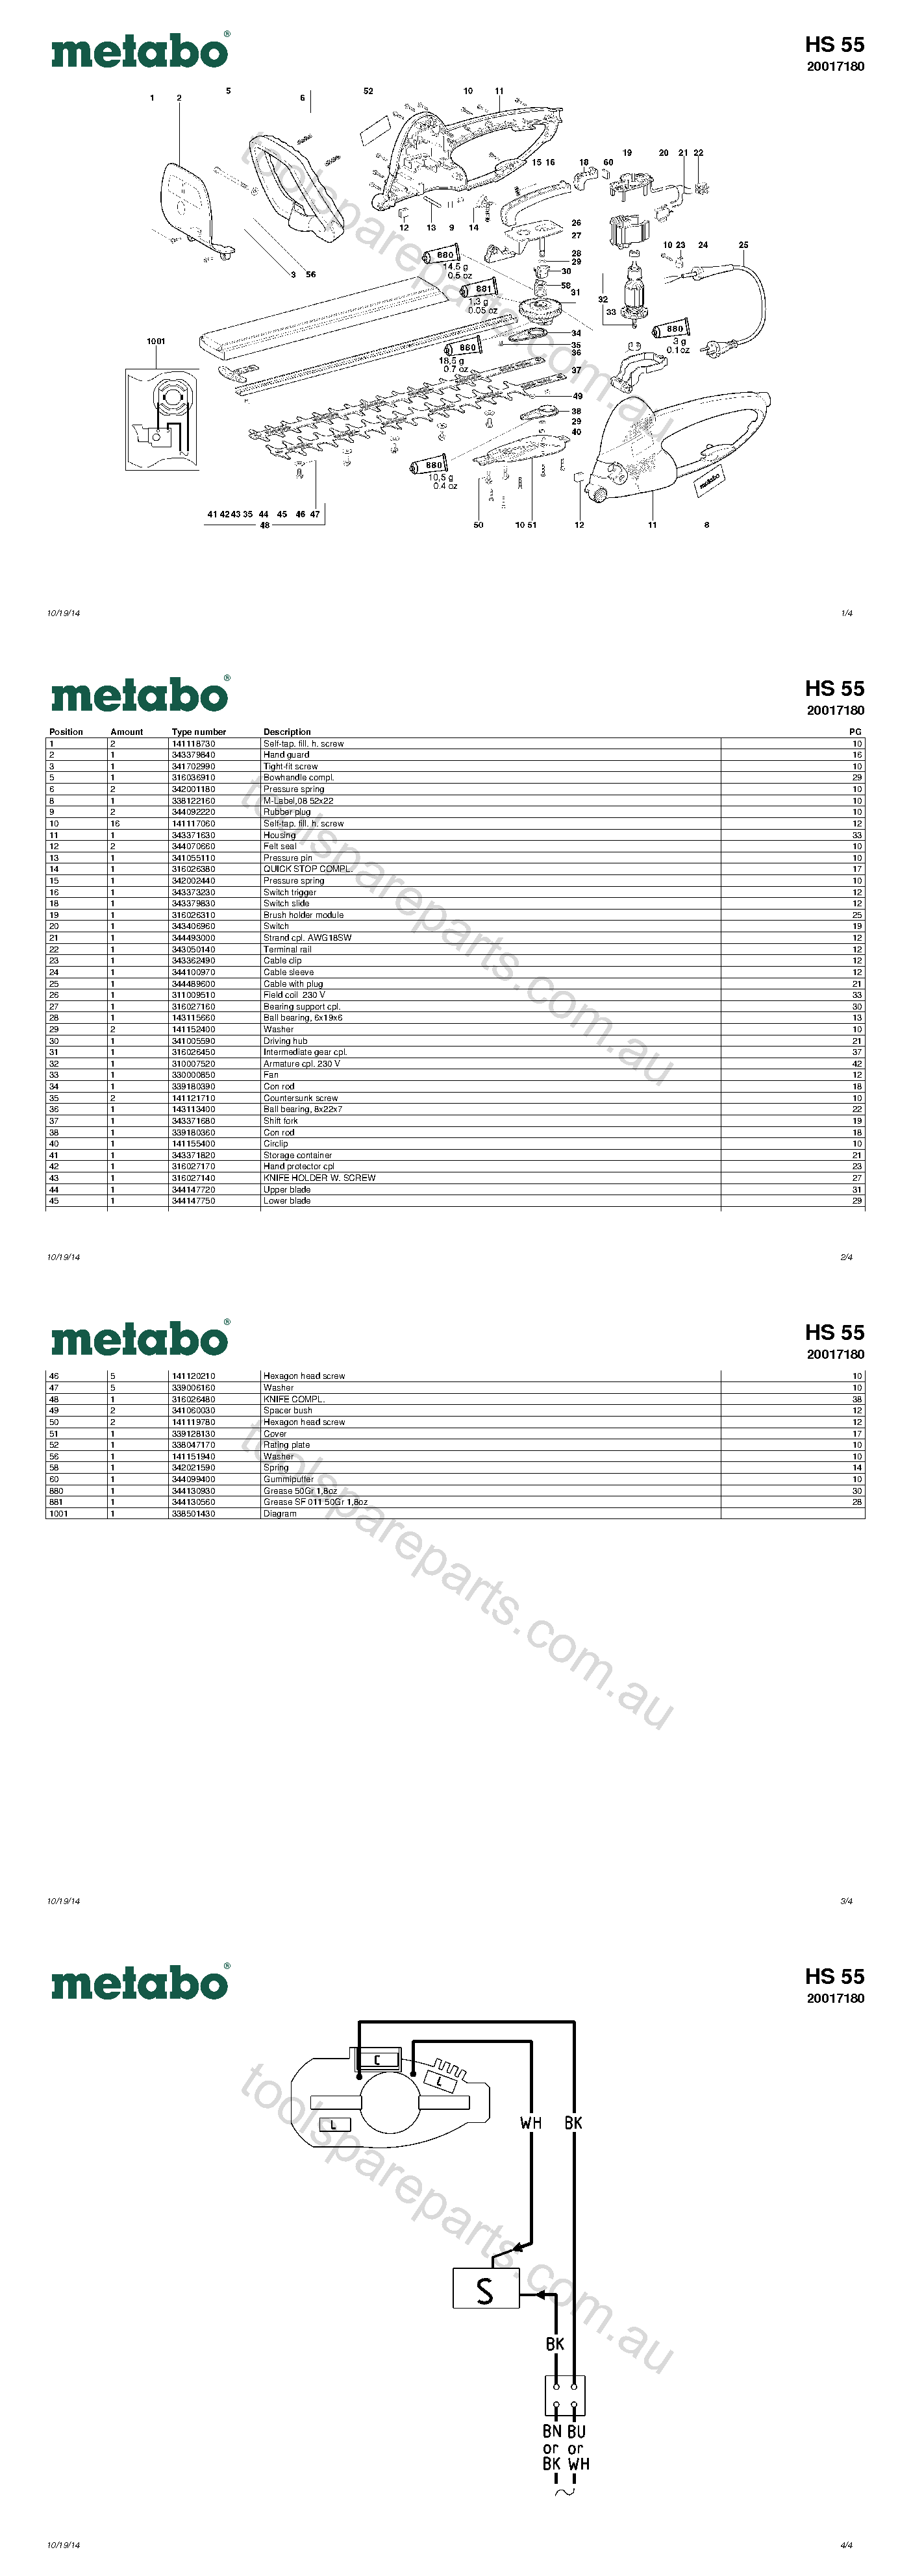 Metabo HS 55 20017180  Diagram 1